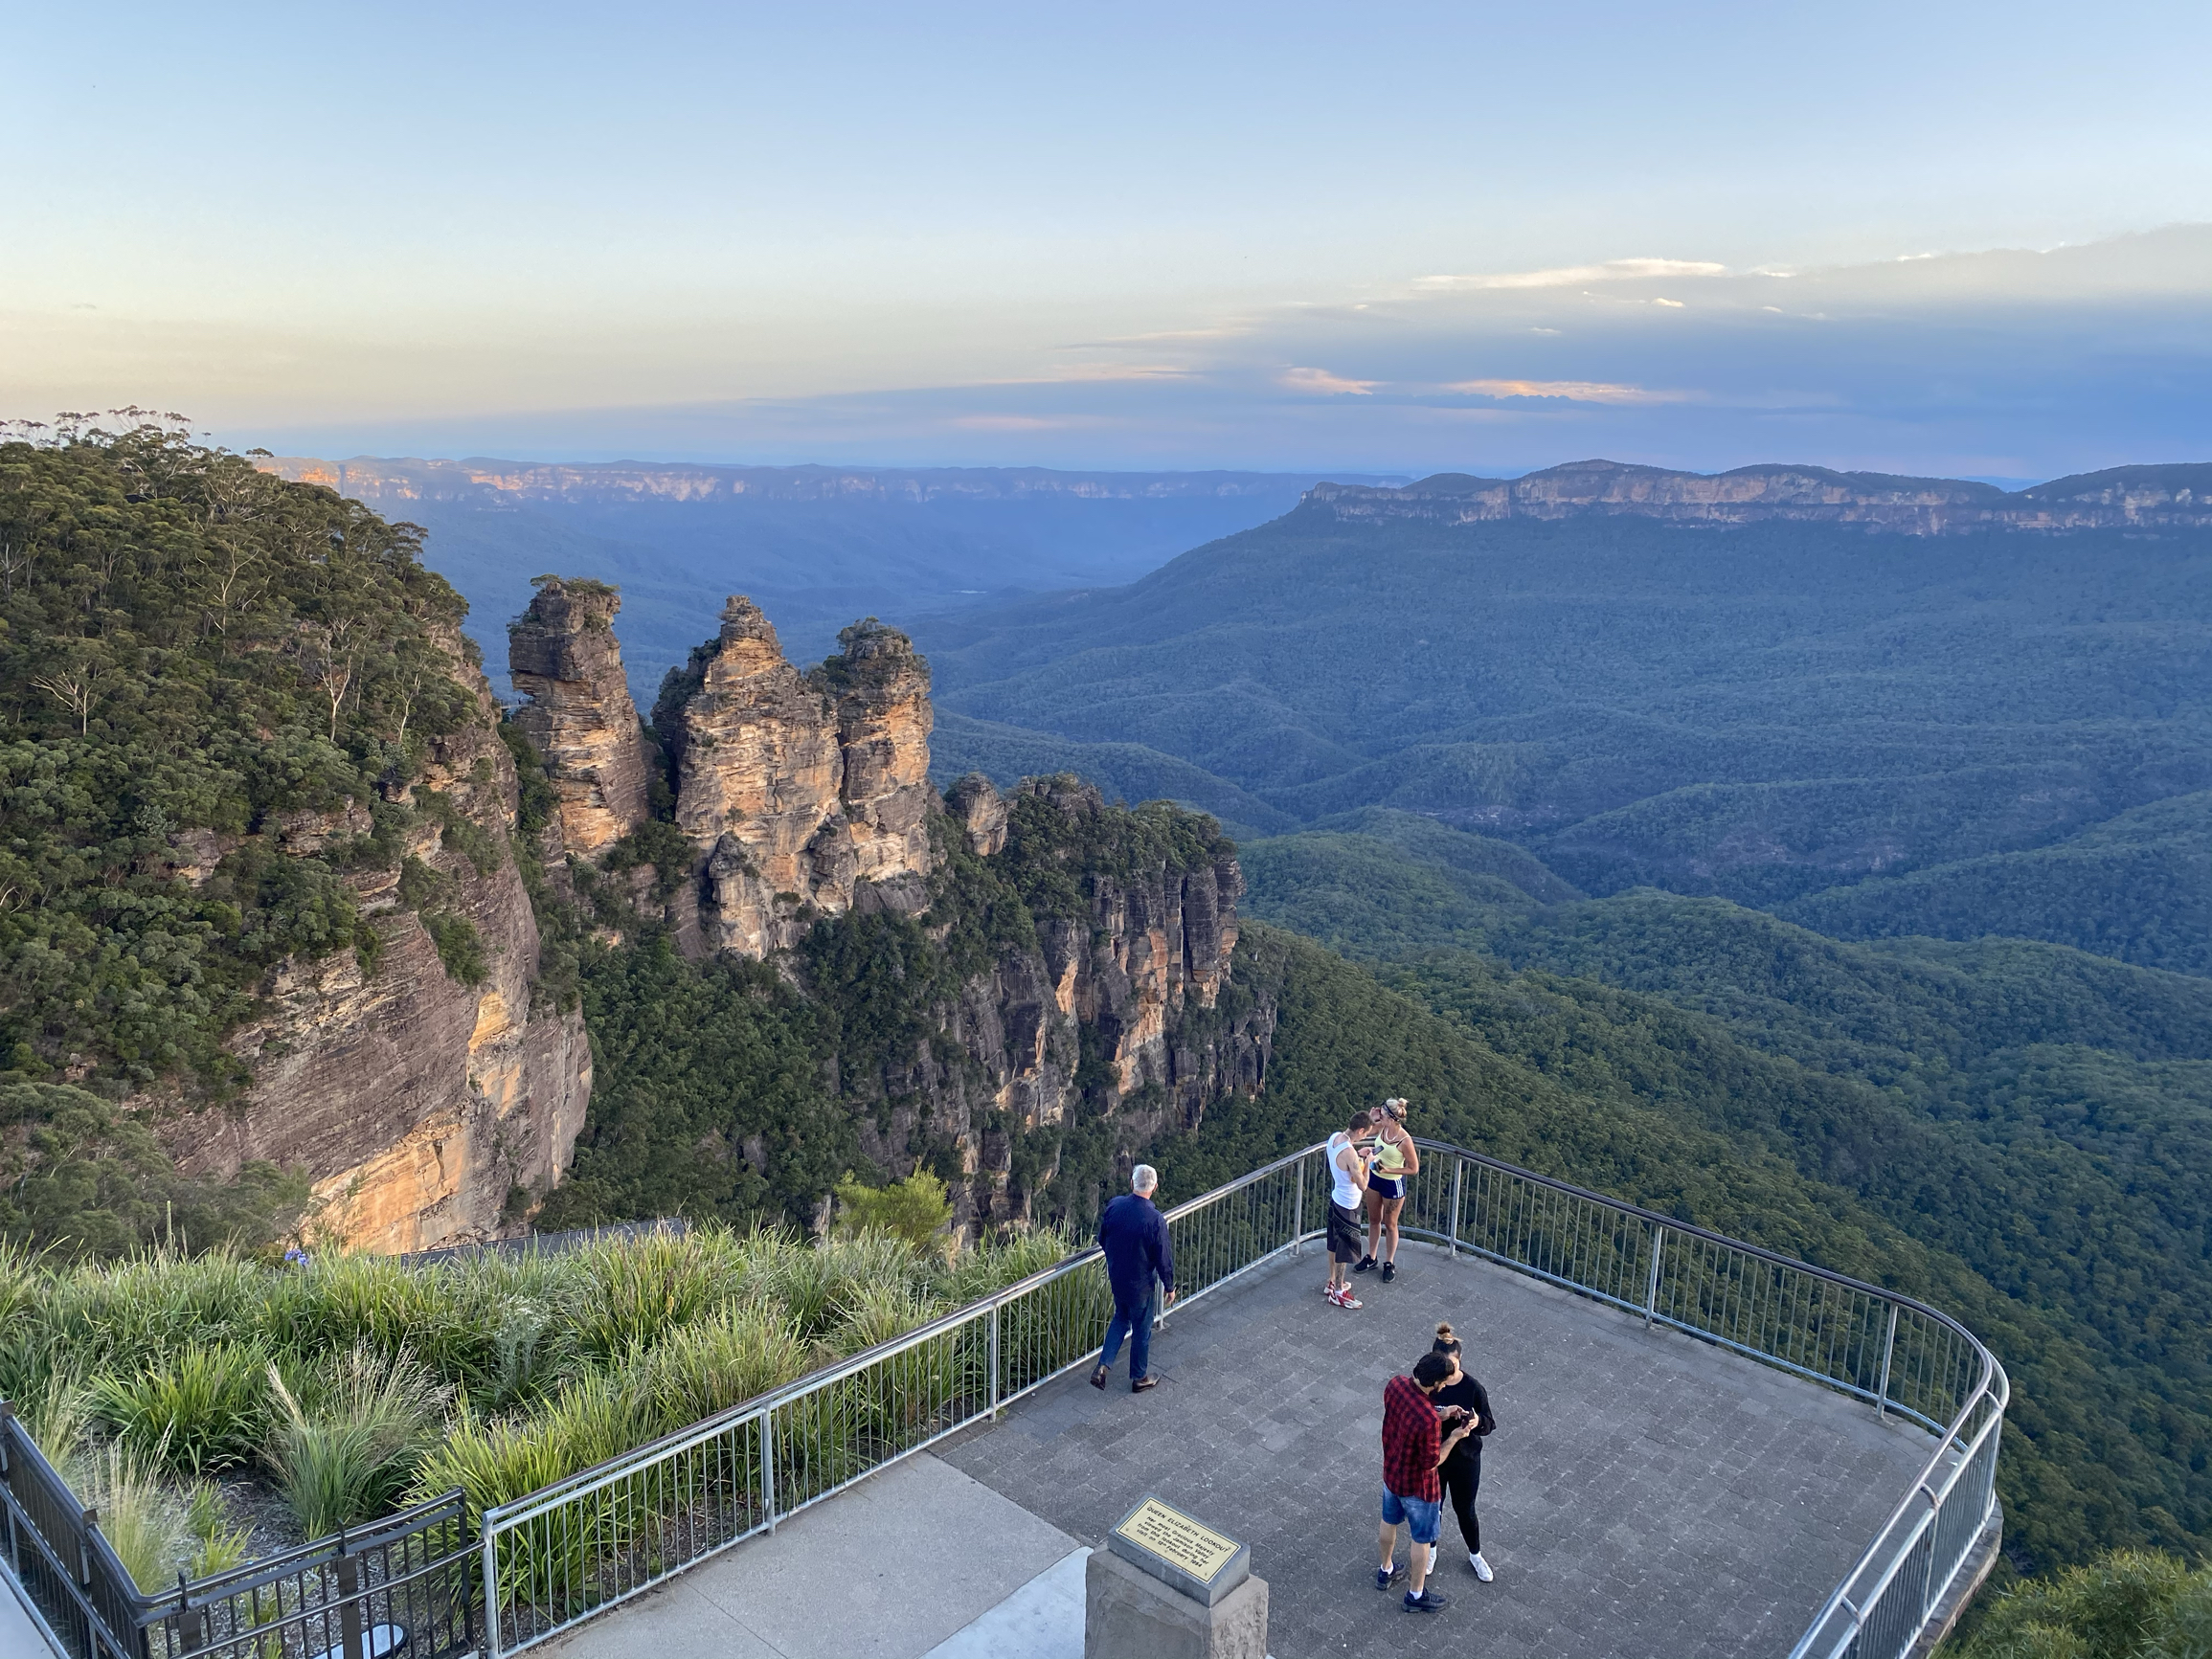 #悉尼蓝山 三姐妹峰  让人心旷神怡的蓝山